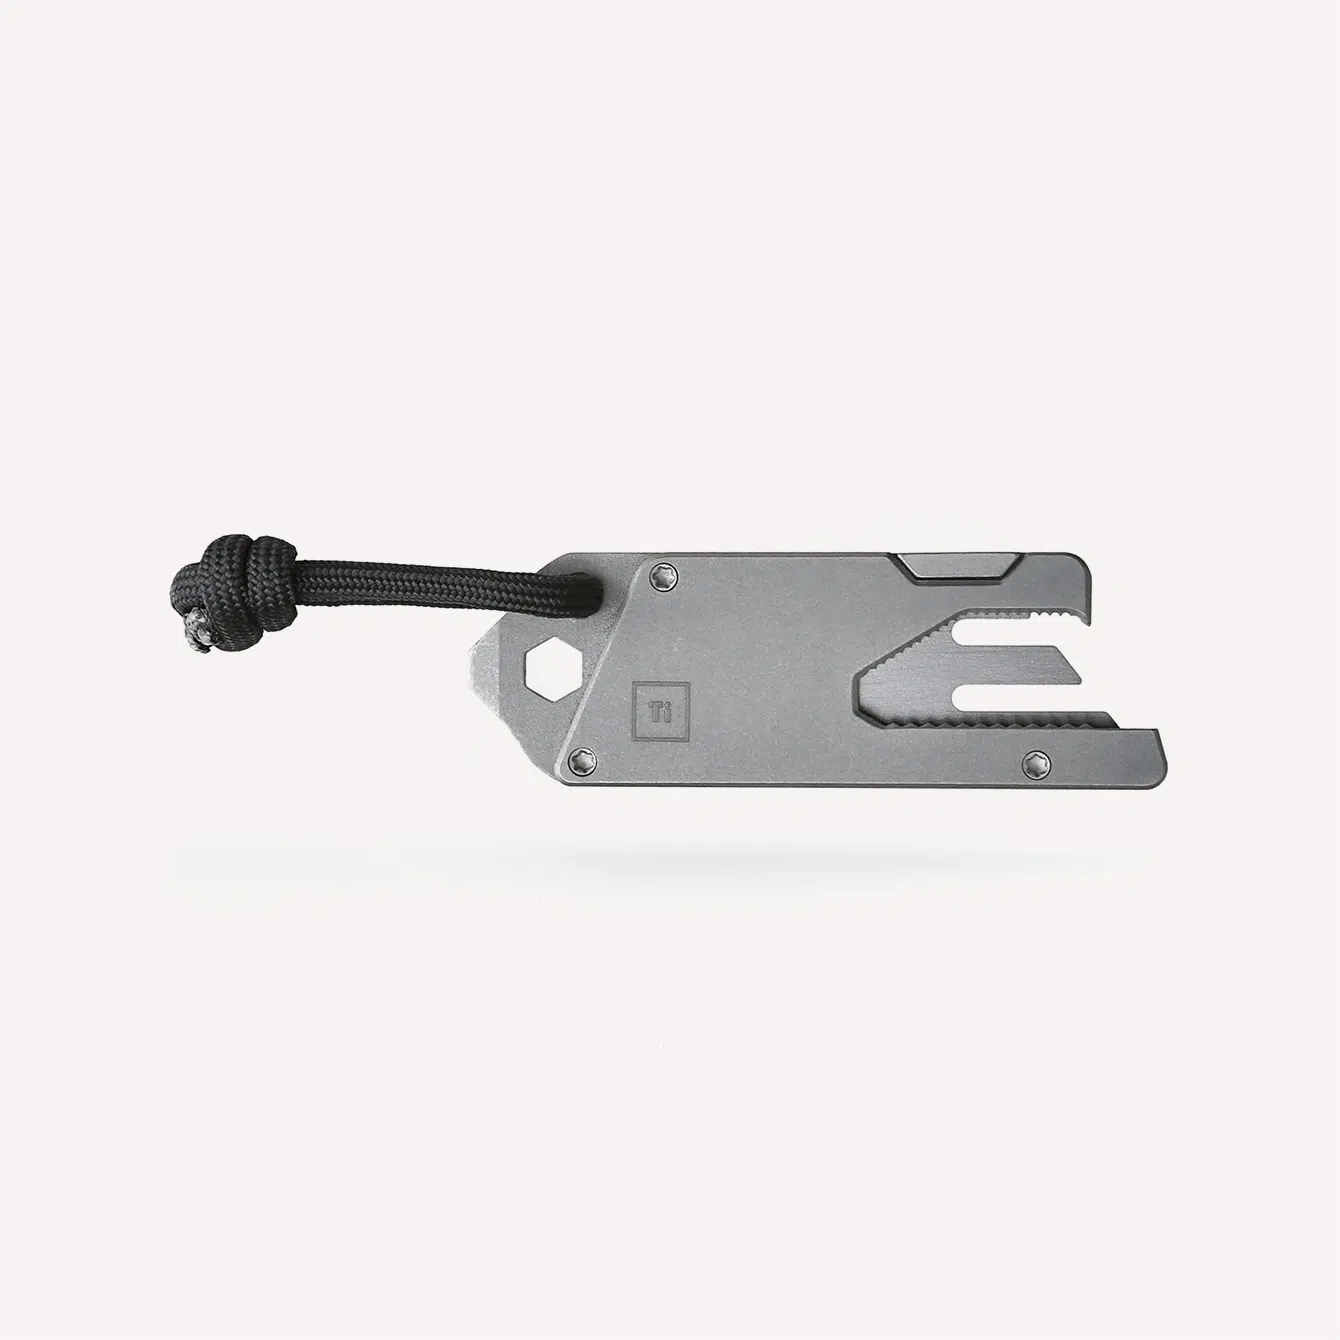 Bigi design titanium pocket tool